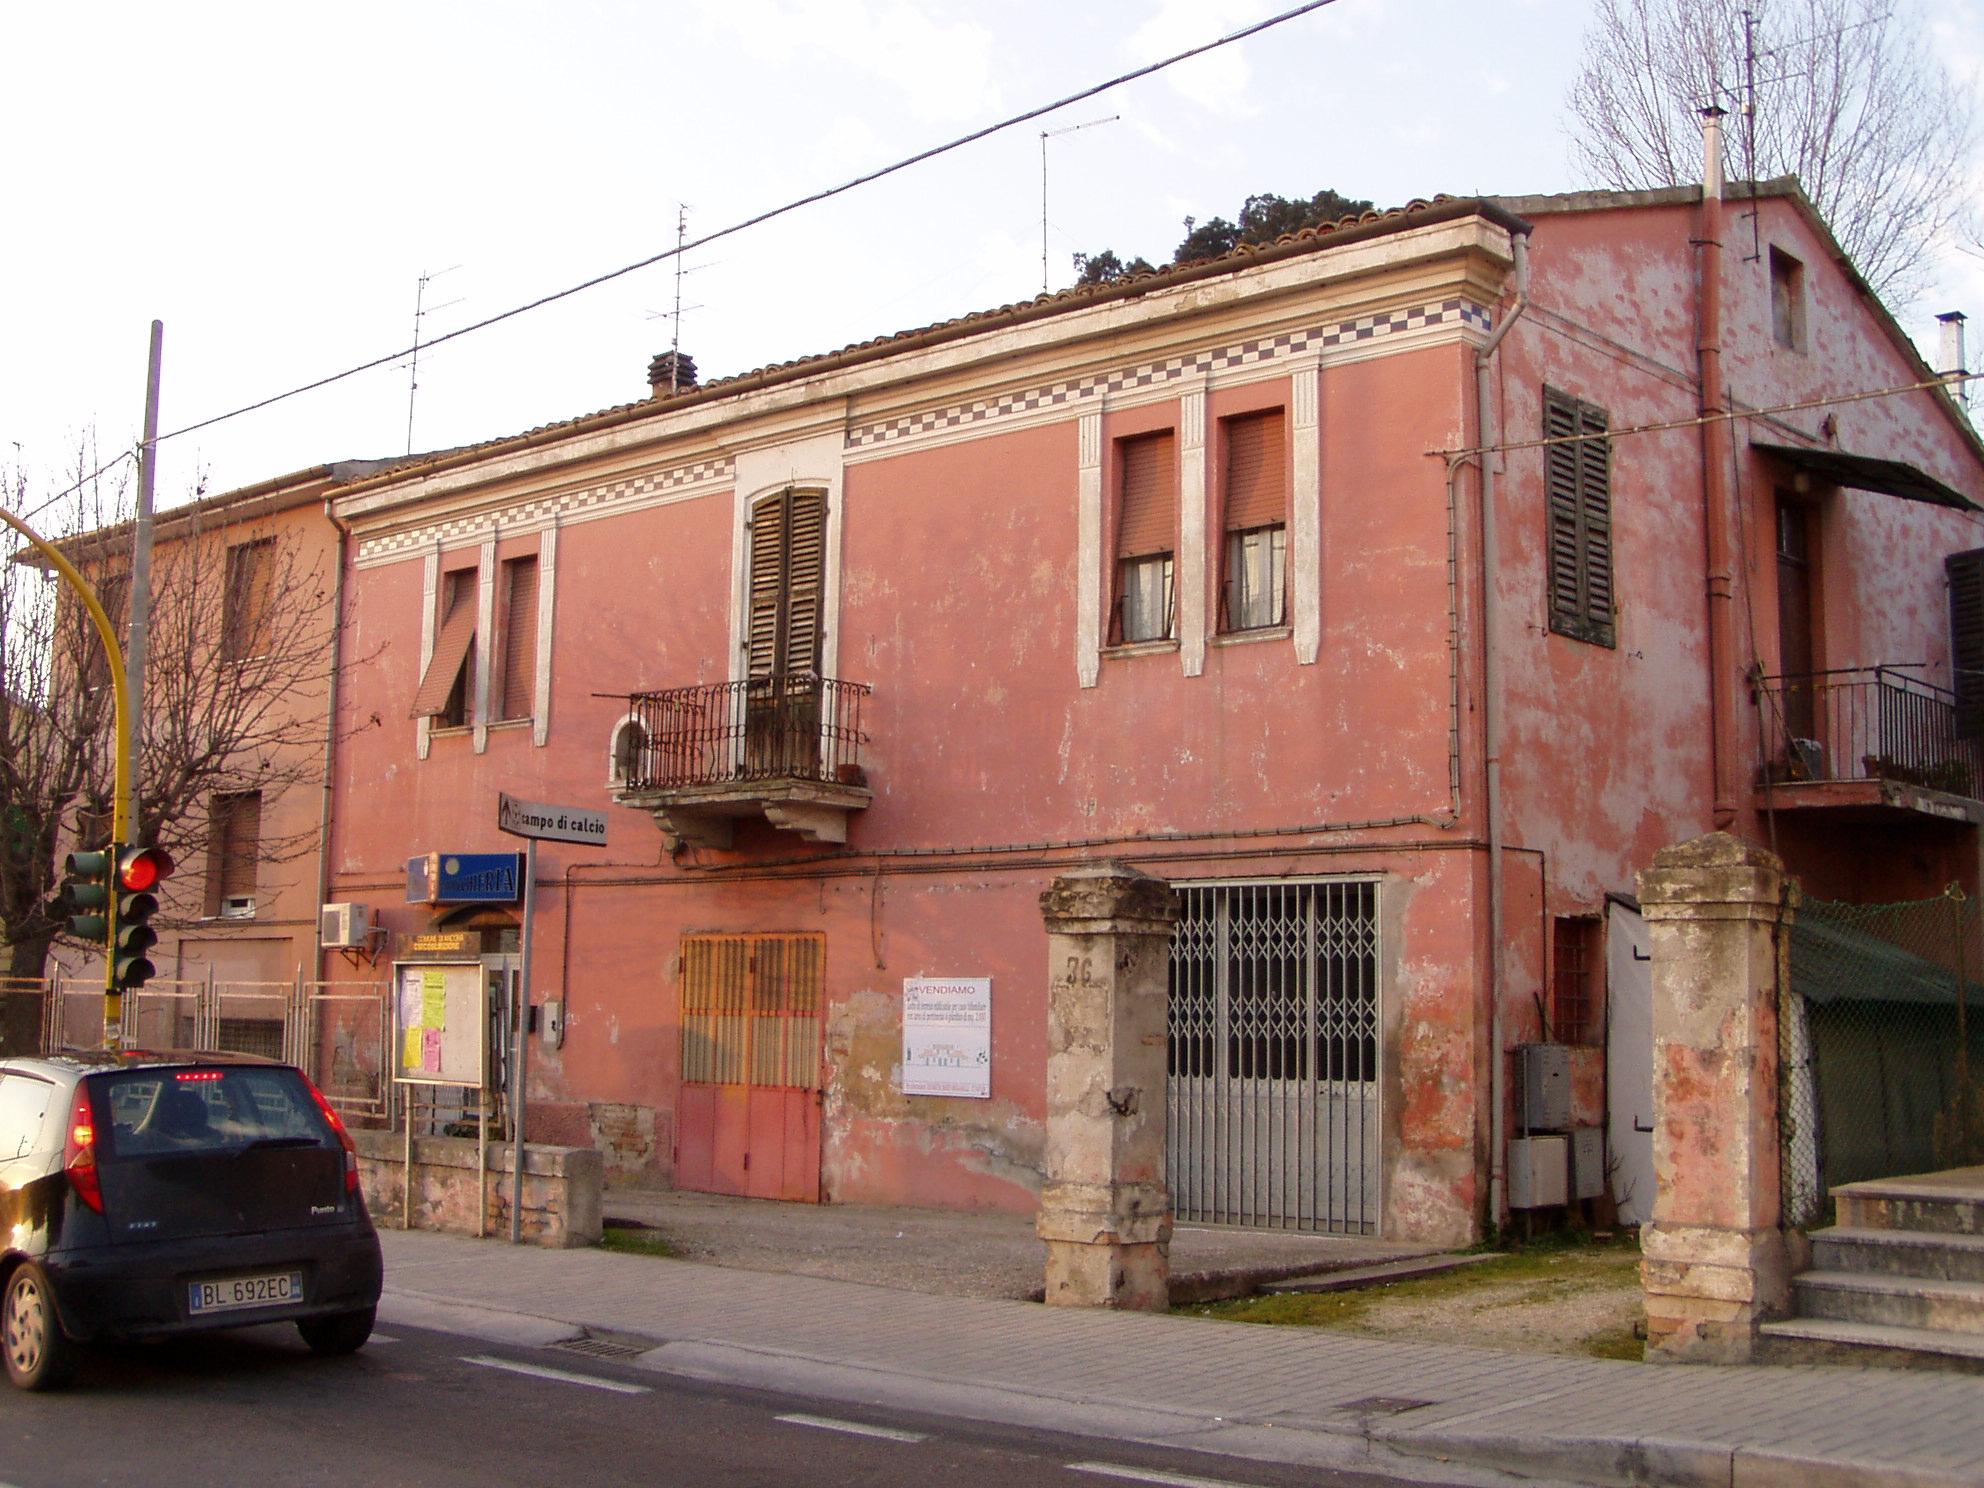 Palazzetto in stile liberty (palazzetto, di appartamenti) - Ancona (AN) 